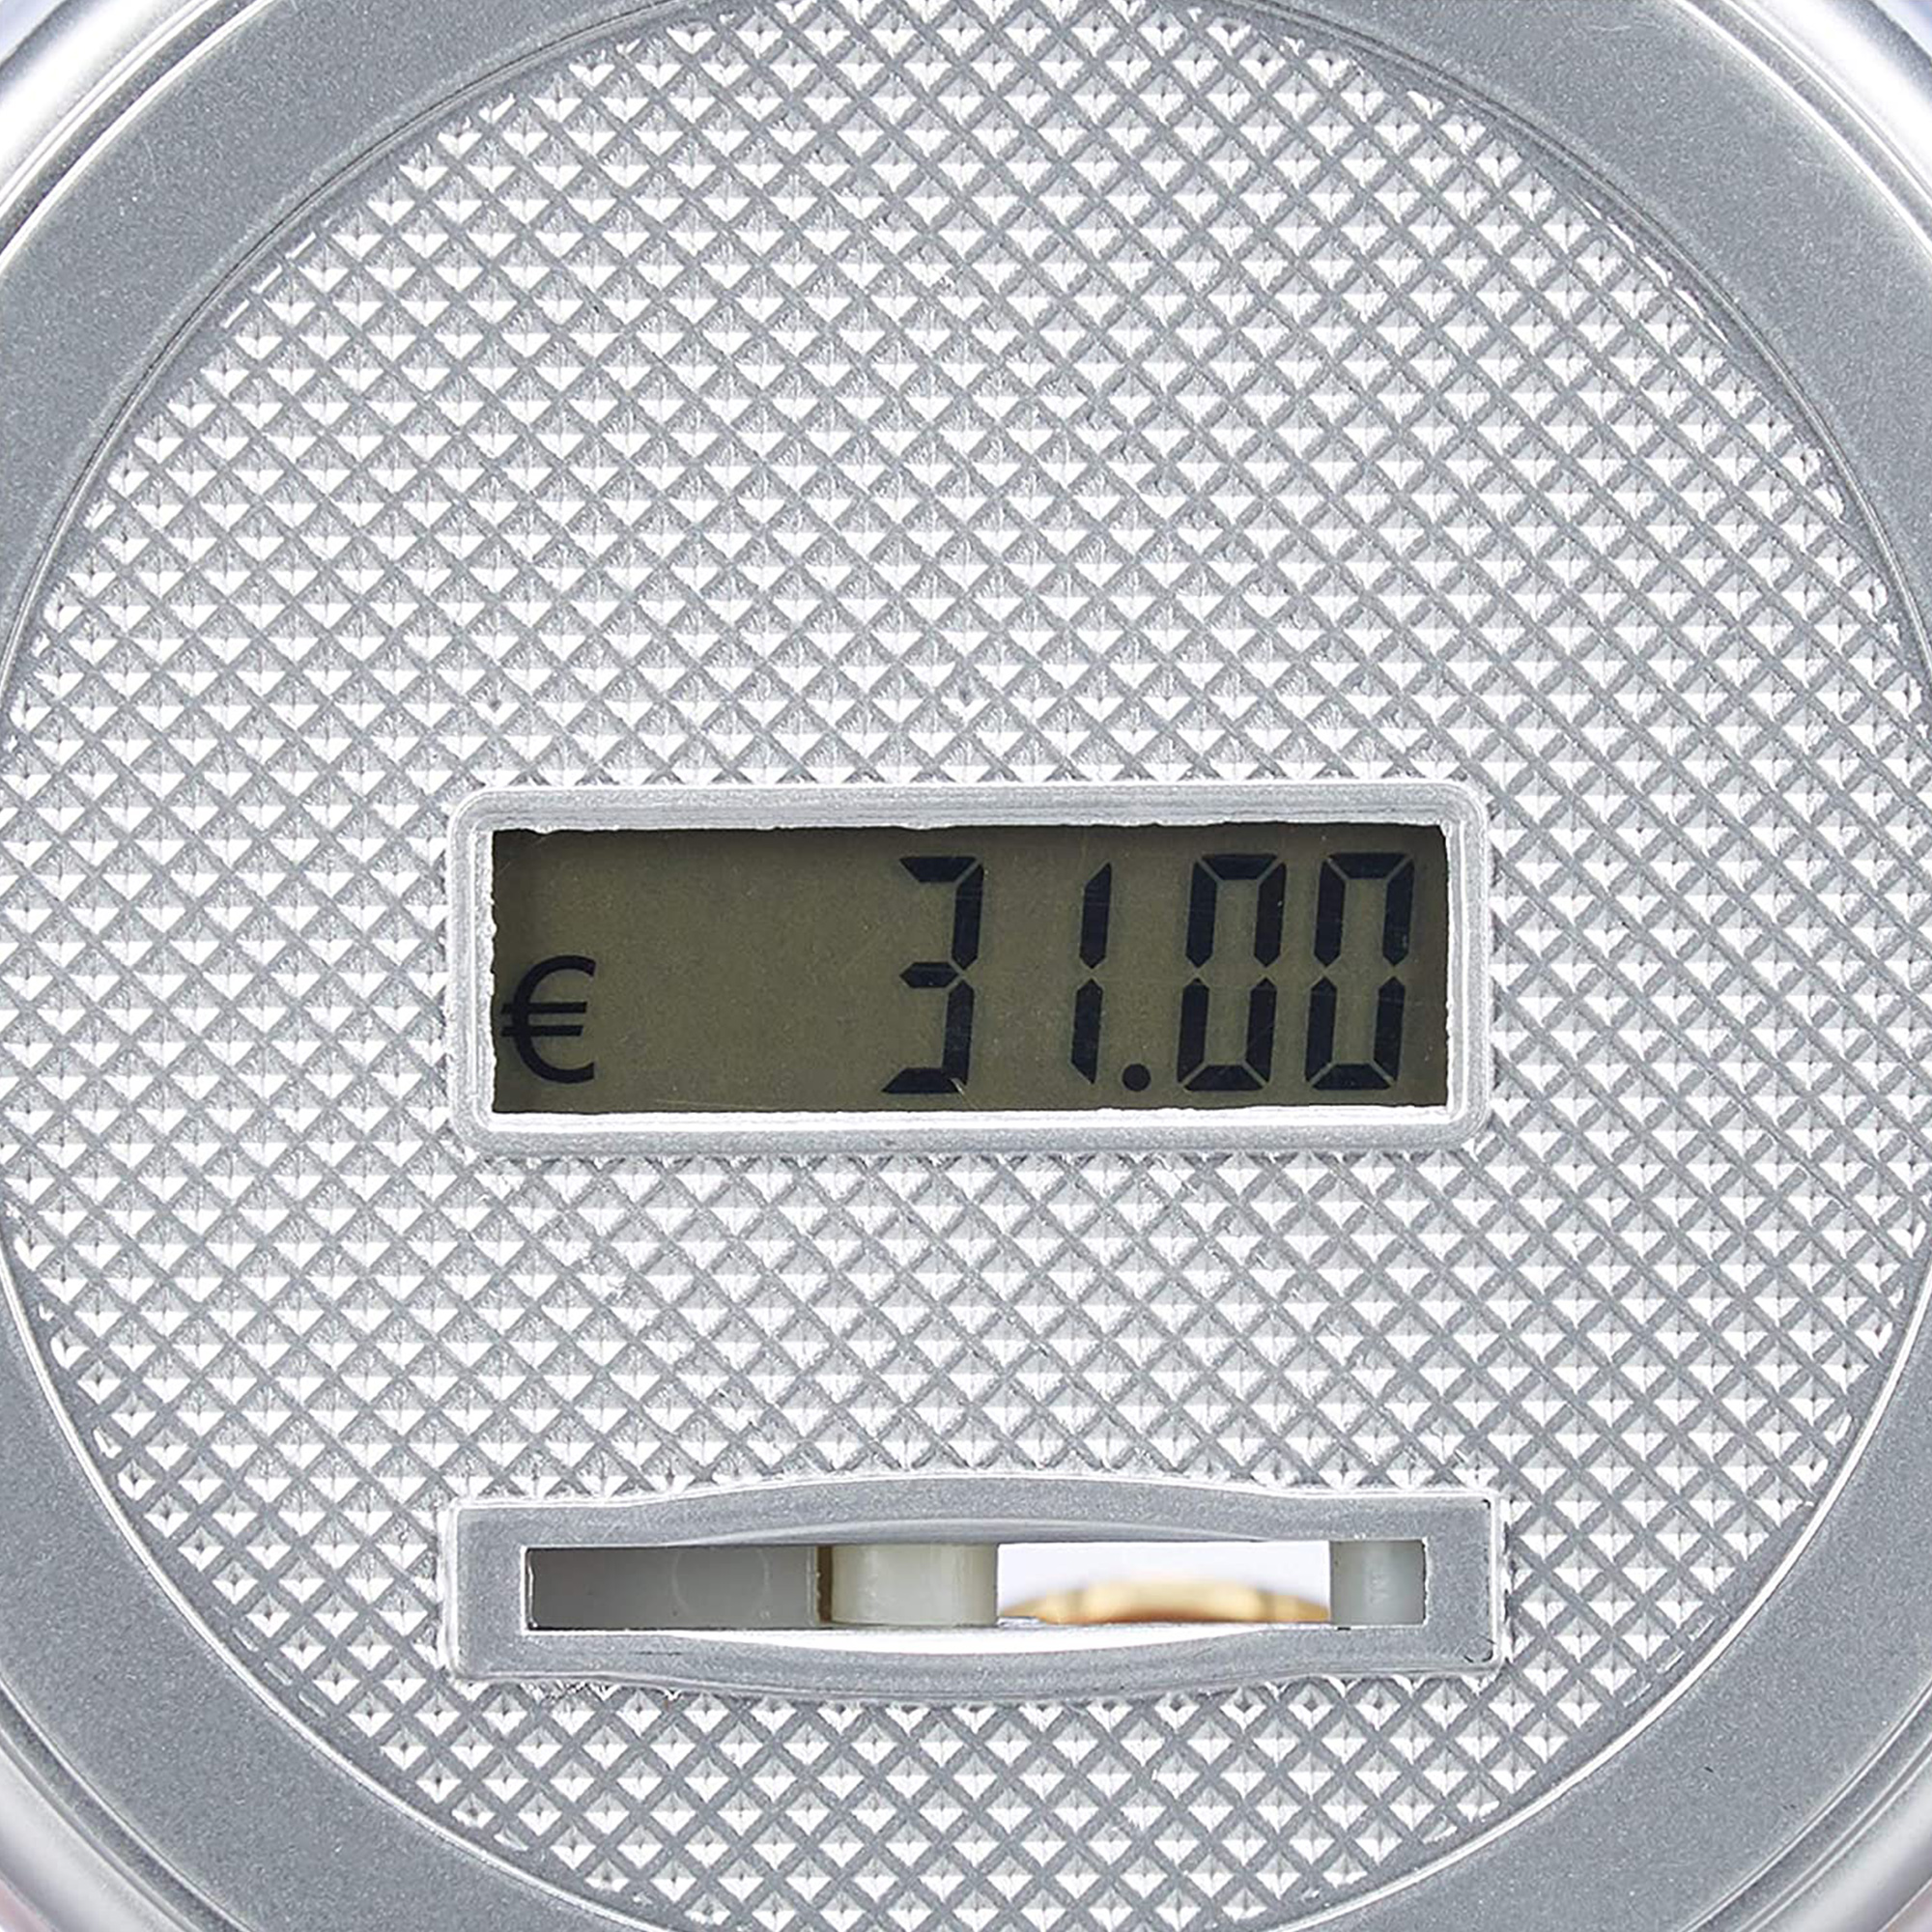 1.5/1.8 L Spardose Geldspardose Münzzähler Sparschwein LCD Display mit Zählwerk 